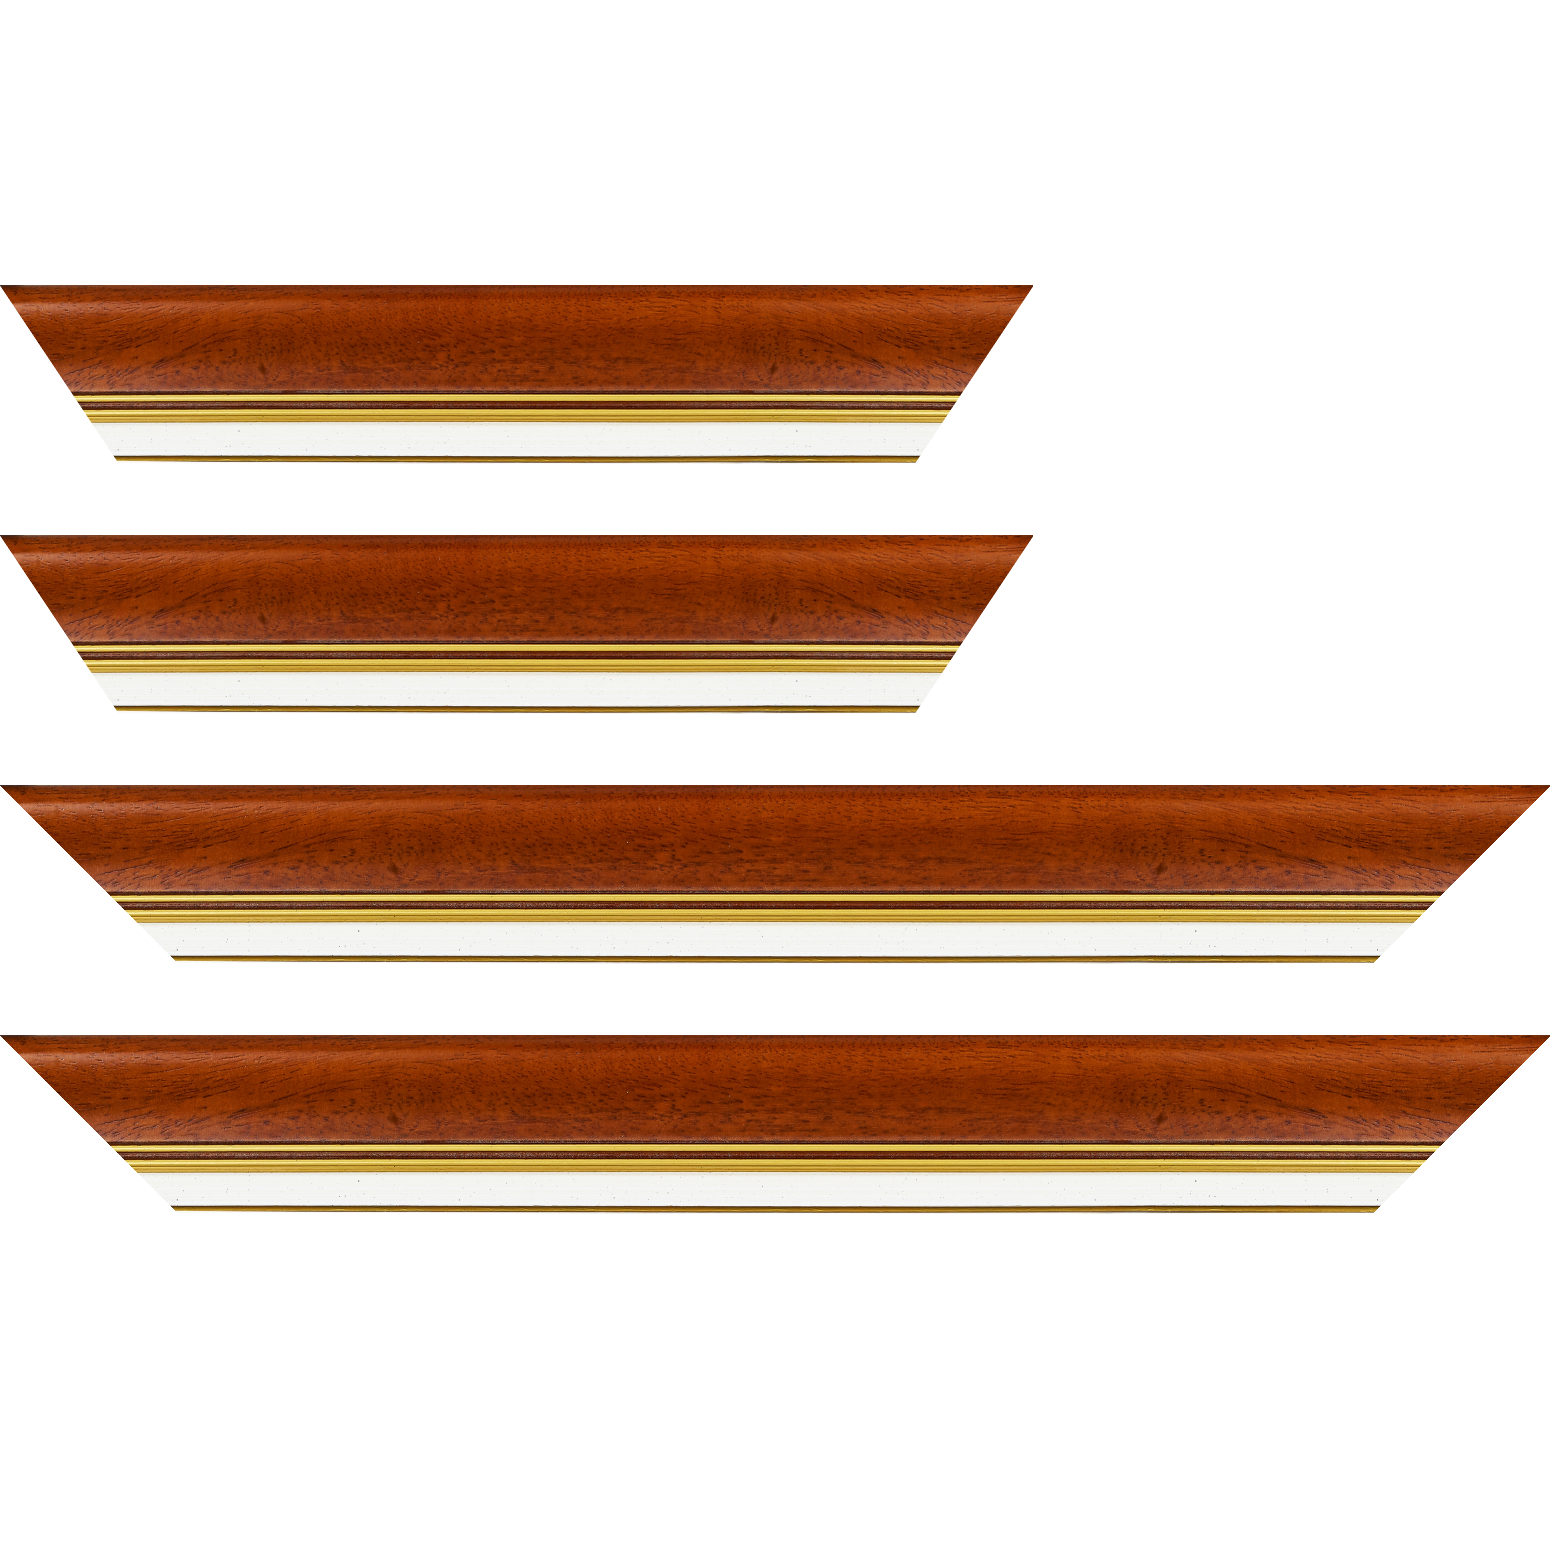 Baguette bois profil incurvé largeur 5.7cm de couleur marron ton bois marie louise blanche mouchetée filet or intégré - 40x60